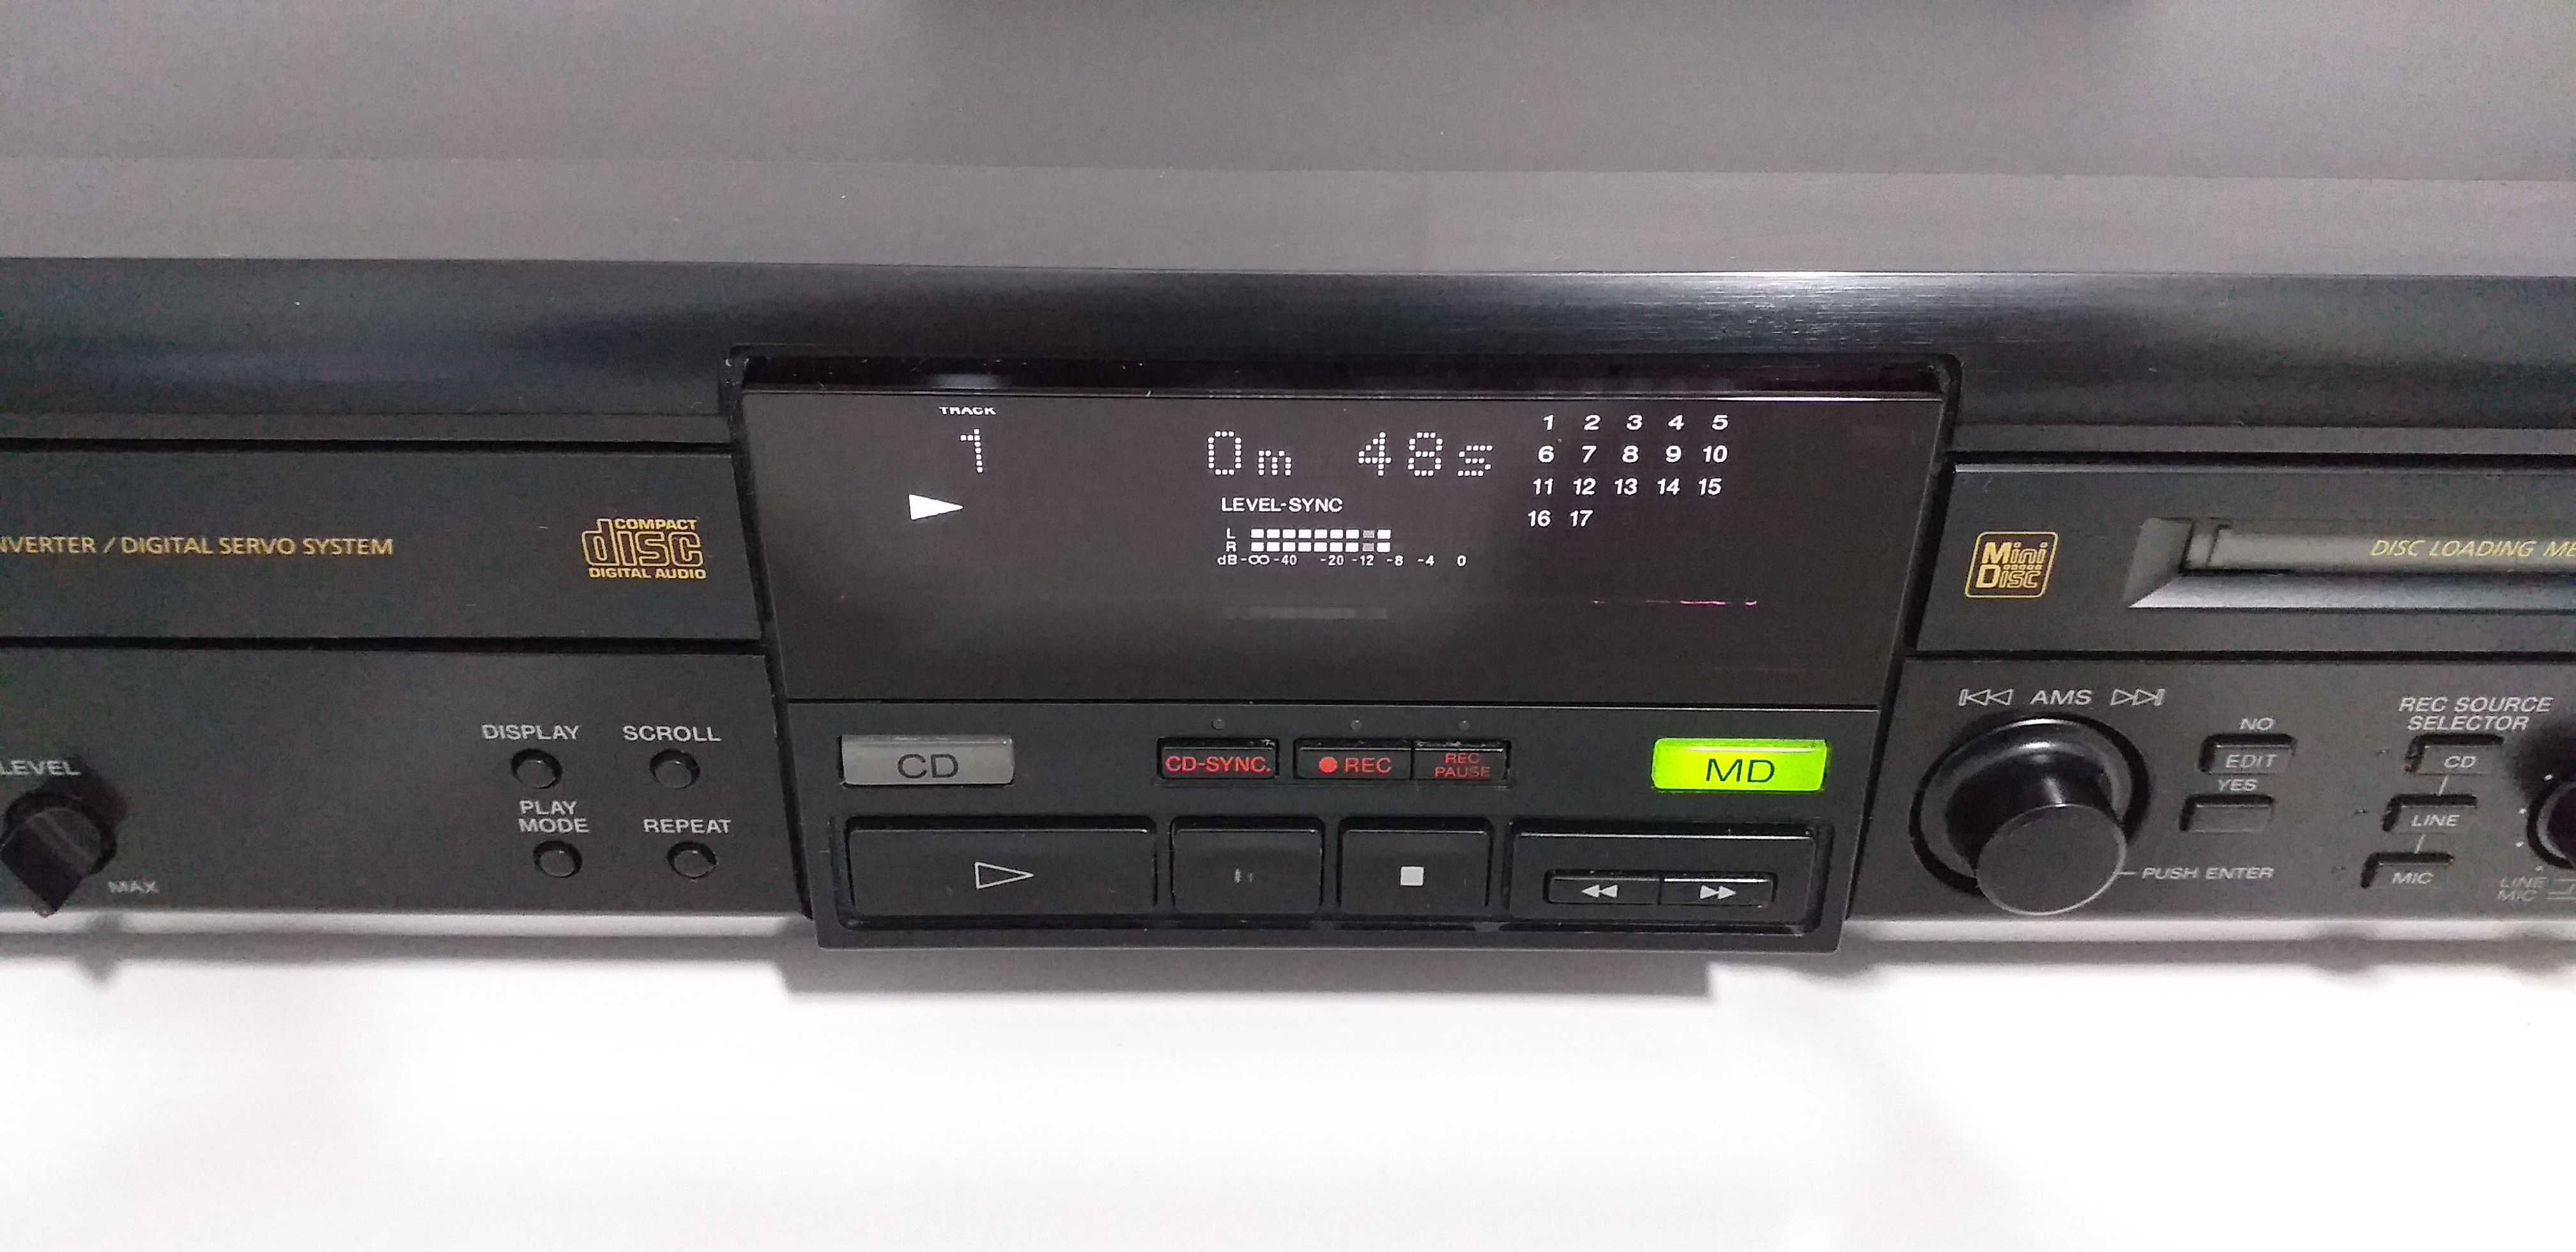 Minidisc CD SONY MXD-D1 cu telecomanda